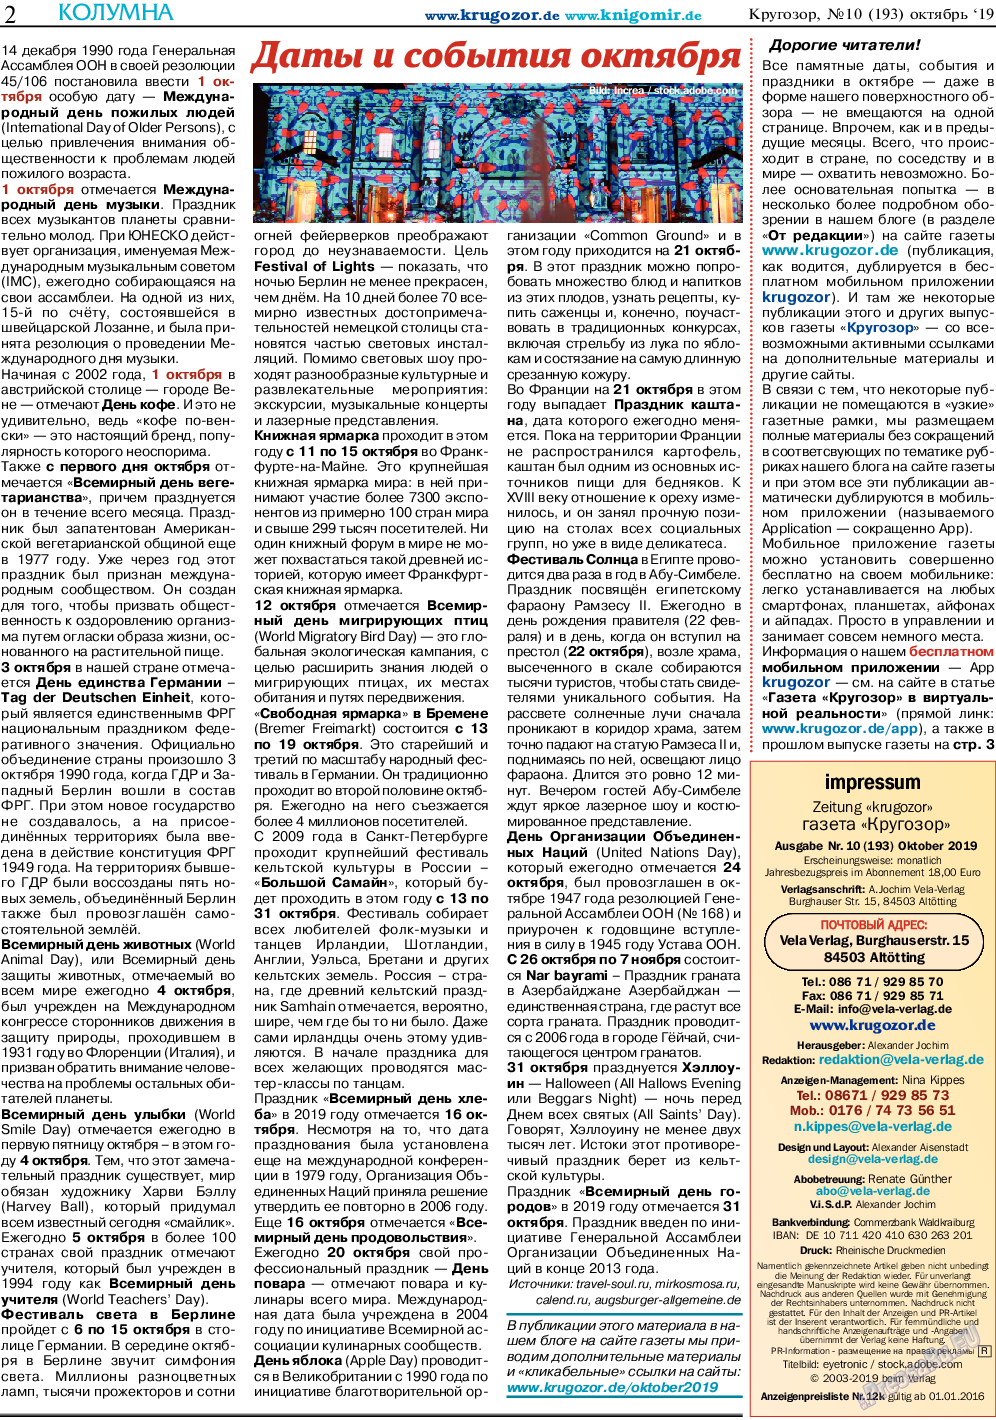 Кругозор (газета). 2019 год, номер 10, стр. 2